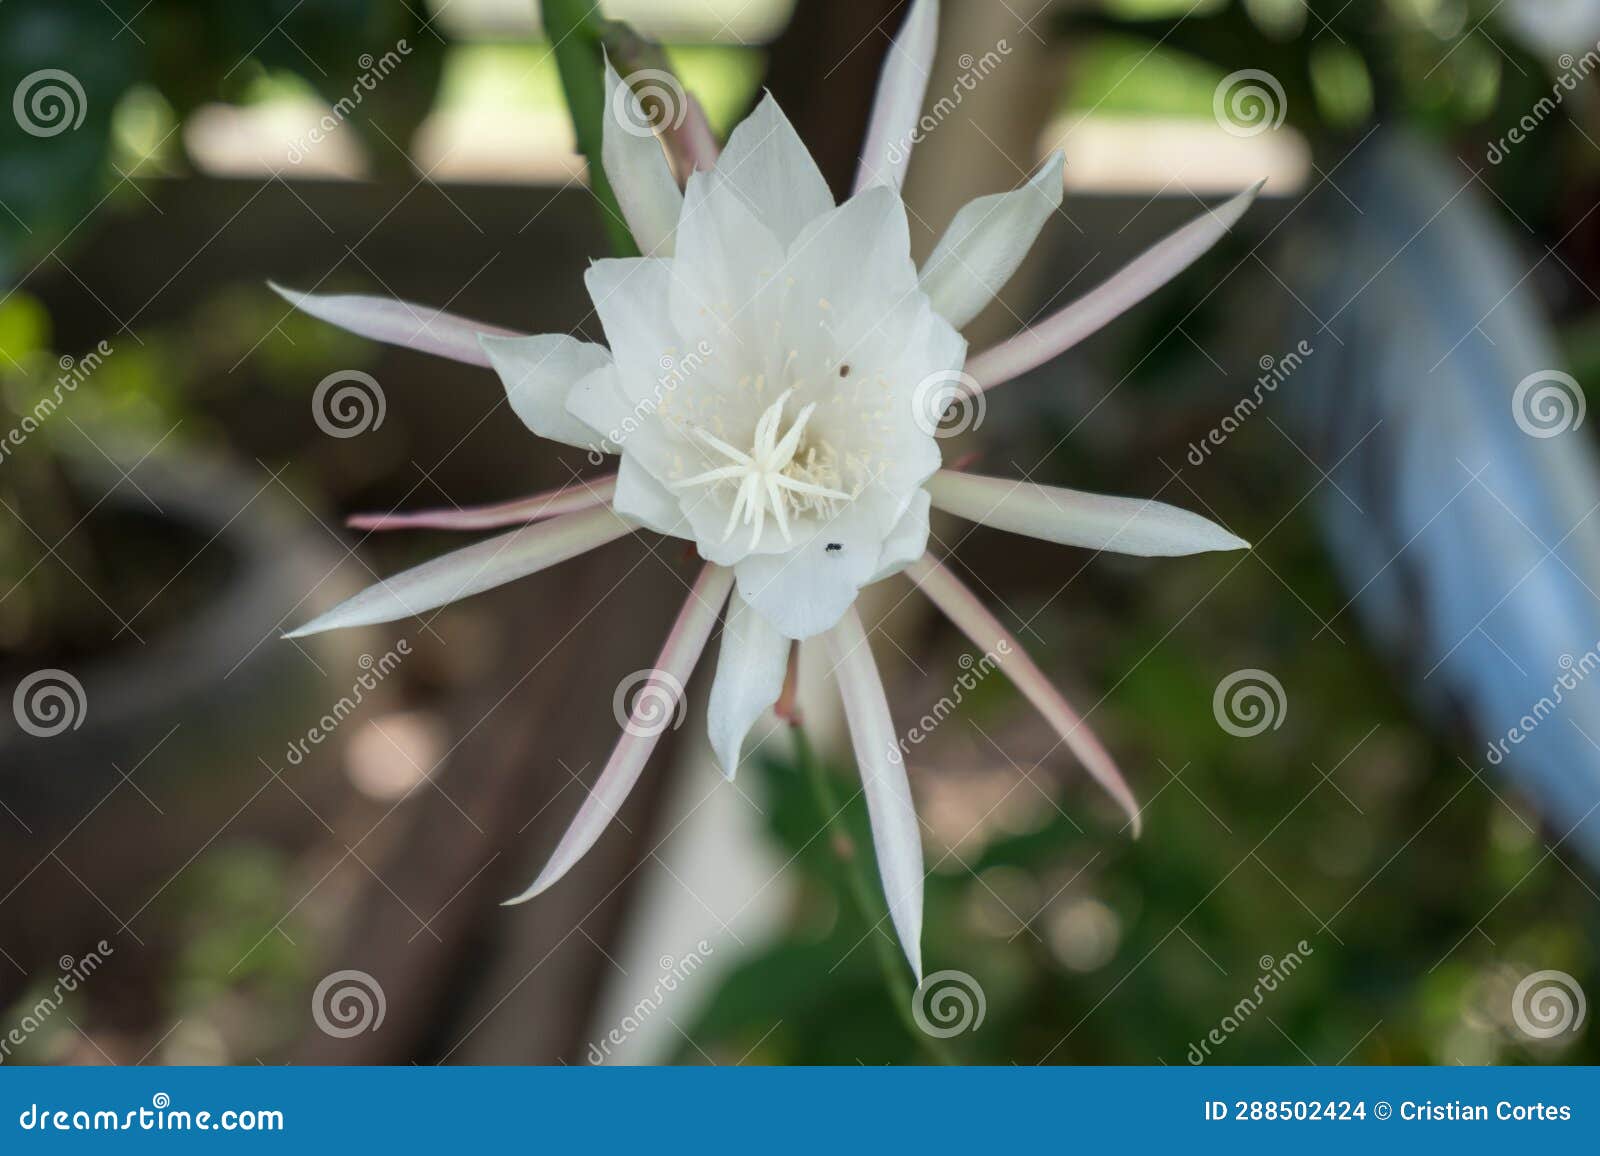 flower cactus epiphyllum pumilum